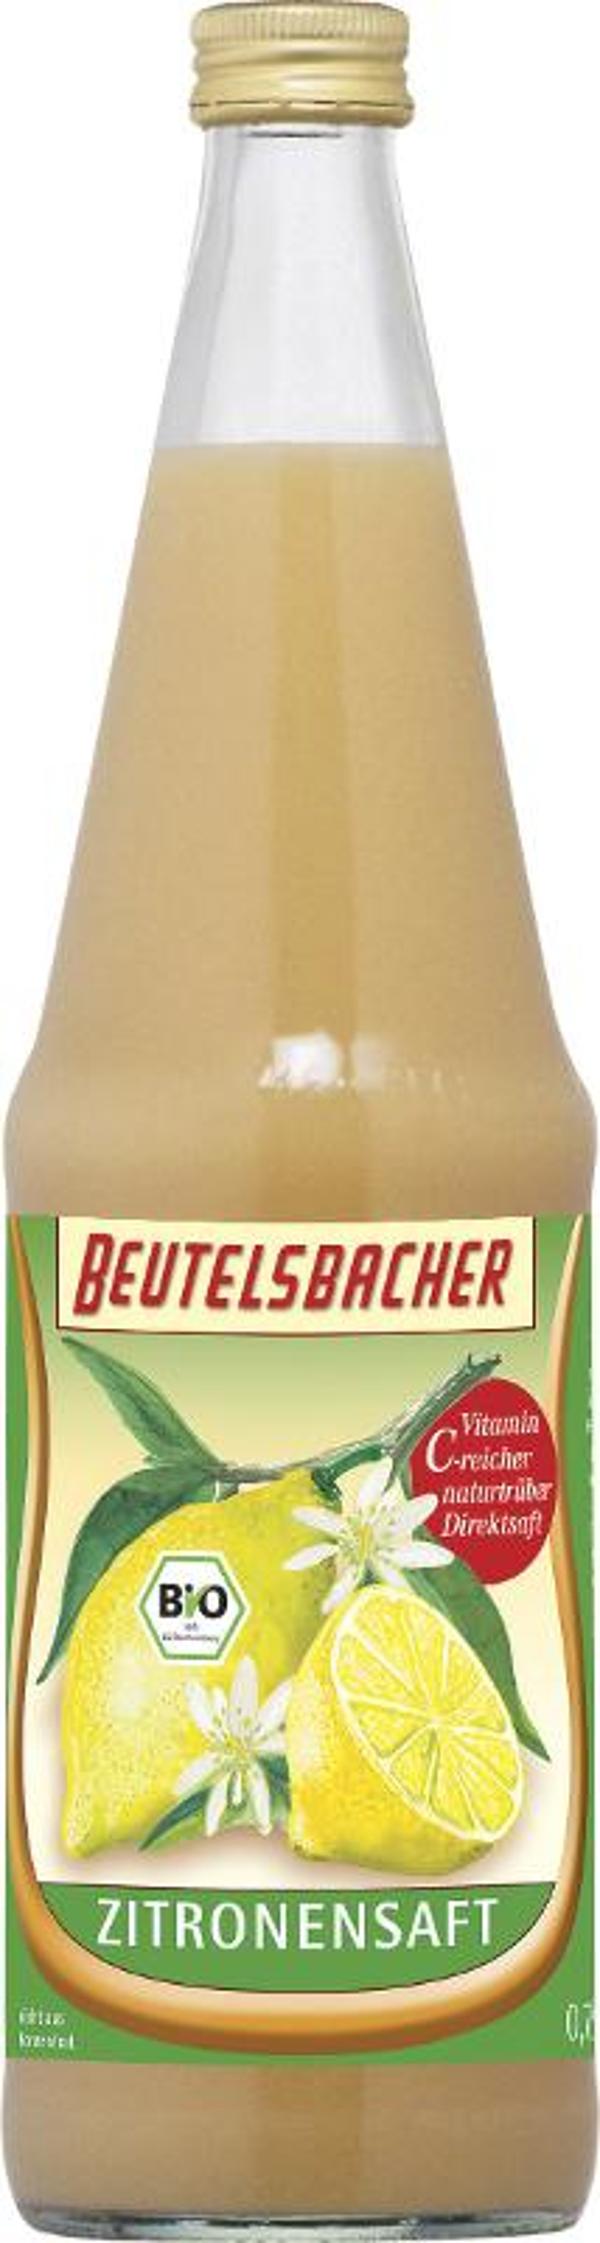 Produktfoto zu Zitronensaft 0,7l Beutelsbacher